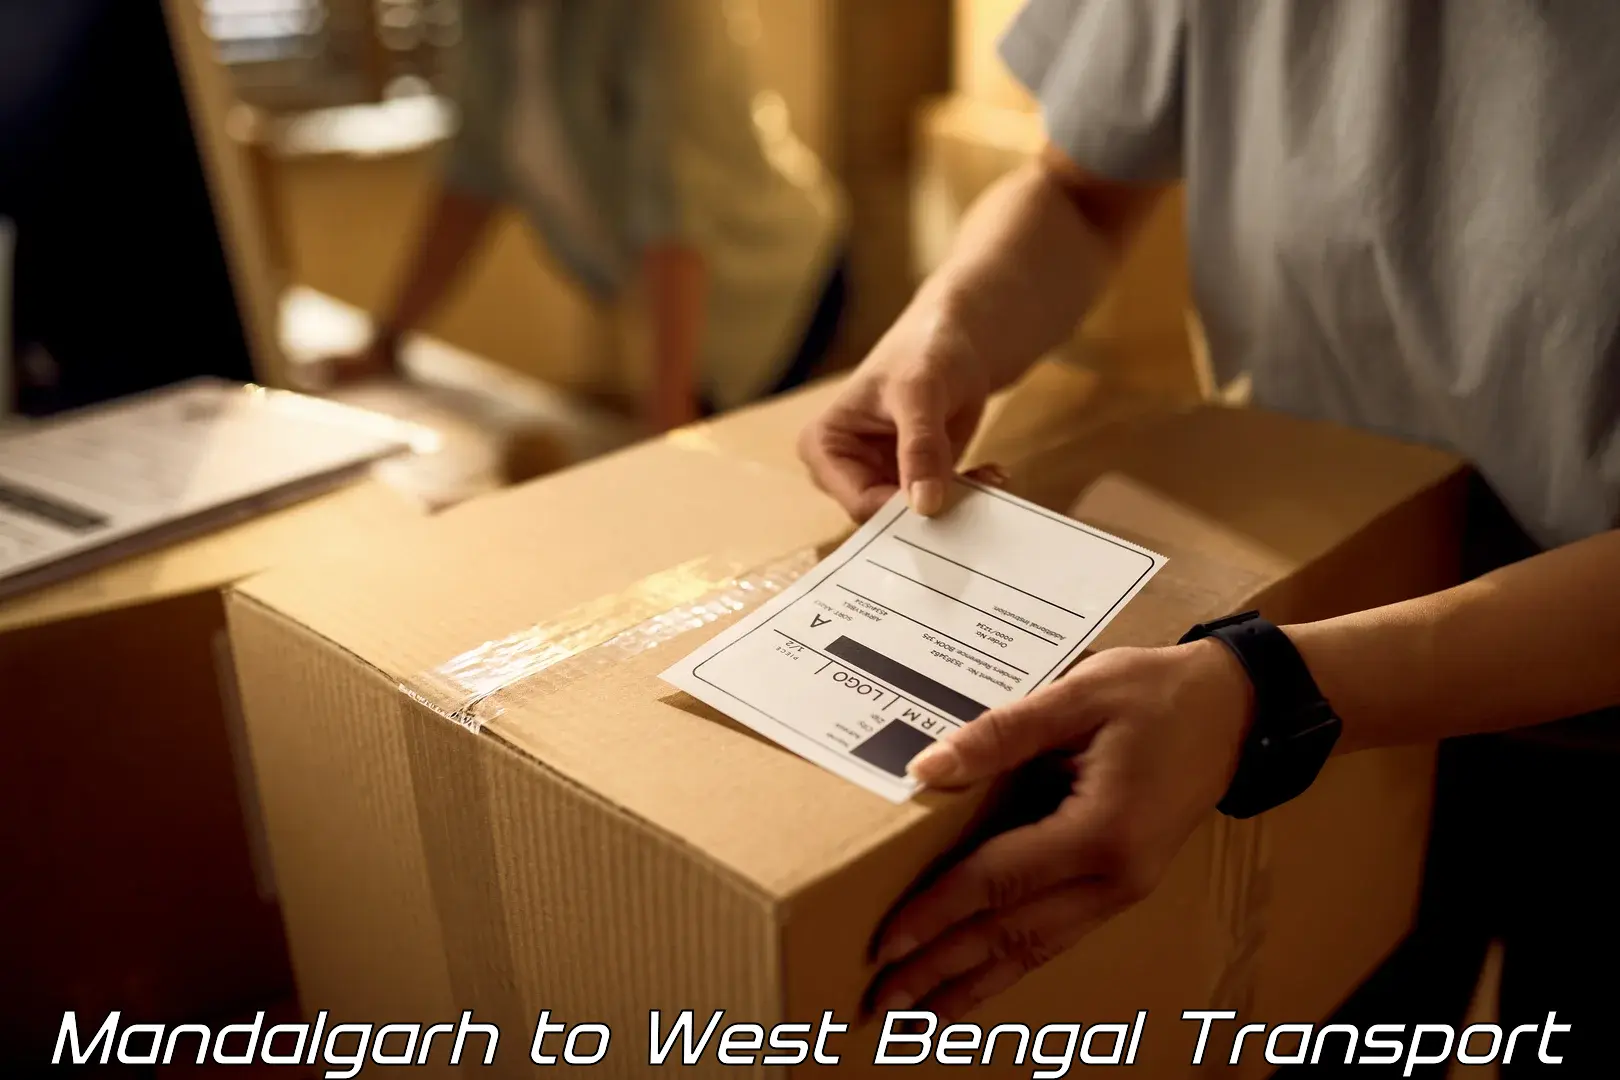 Furniture transport service Mandalgarh to Mirik